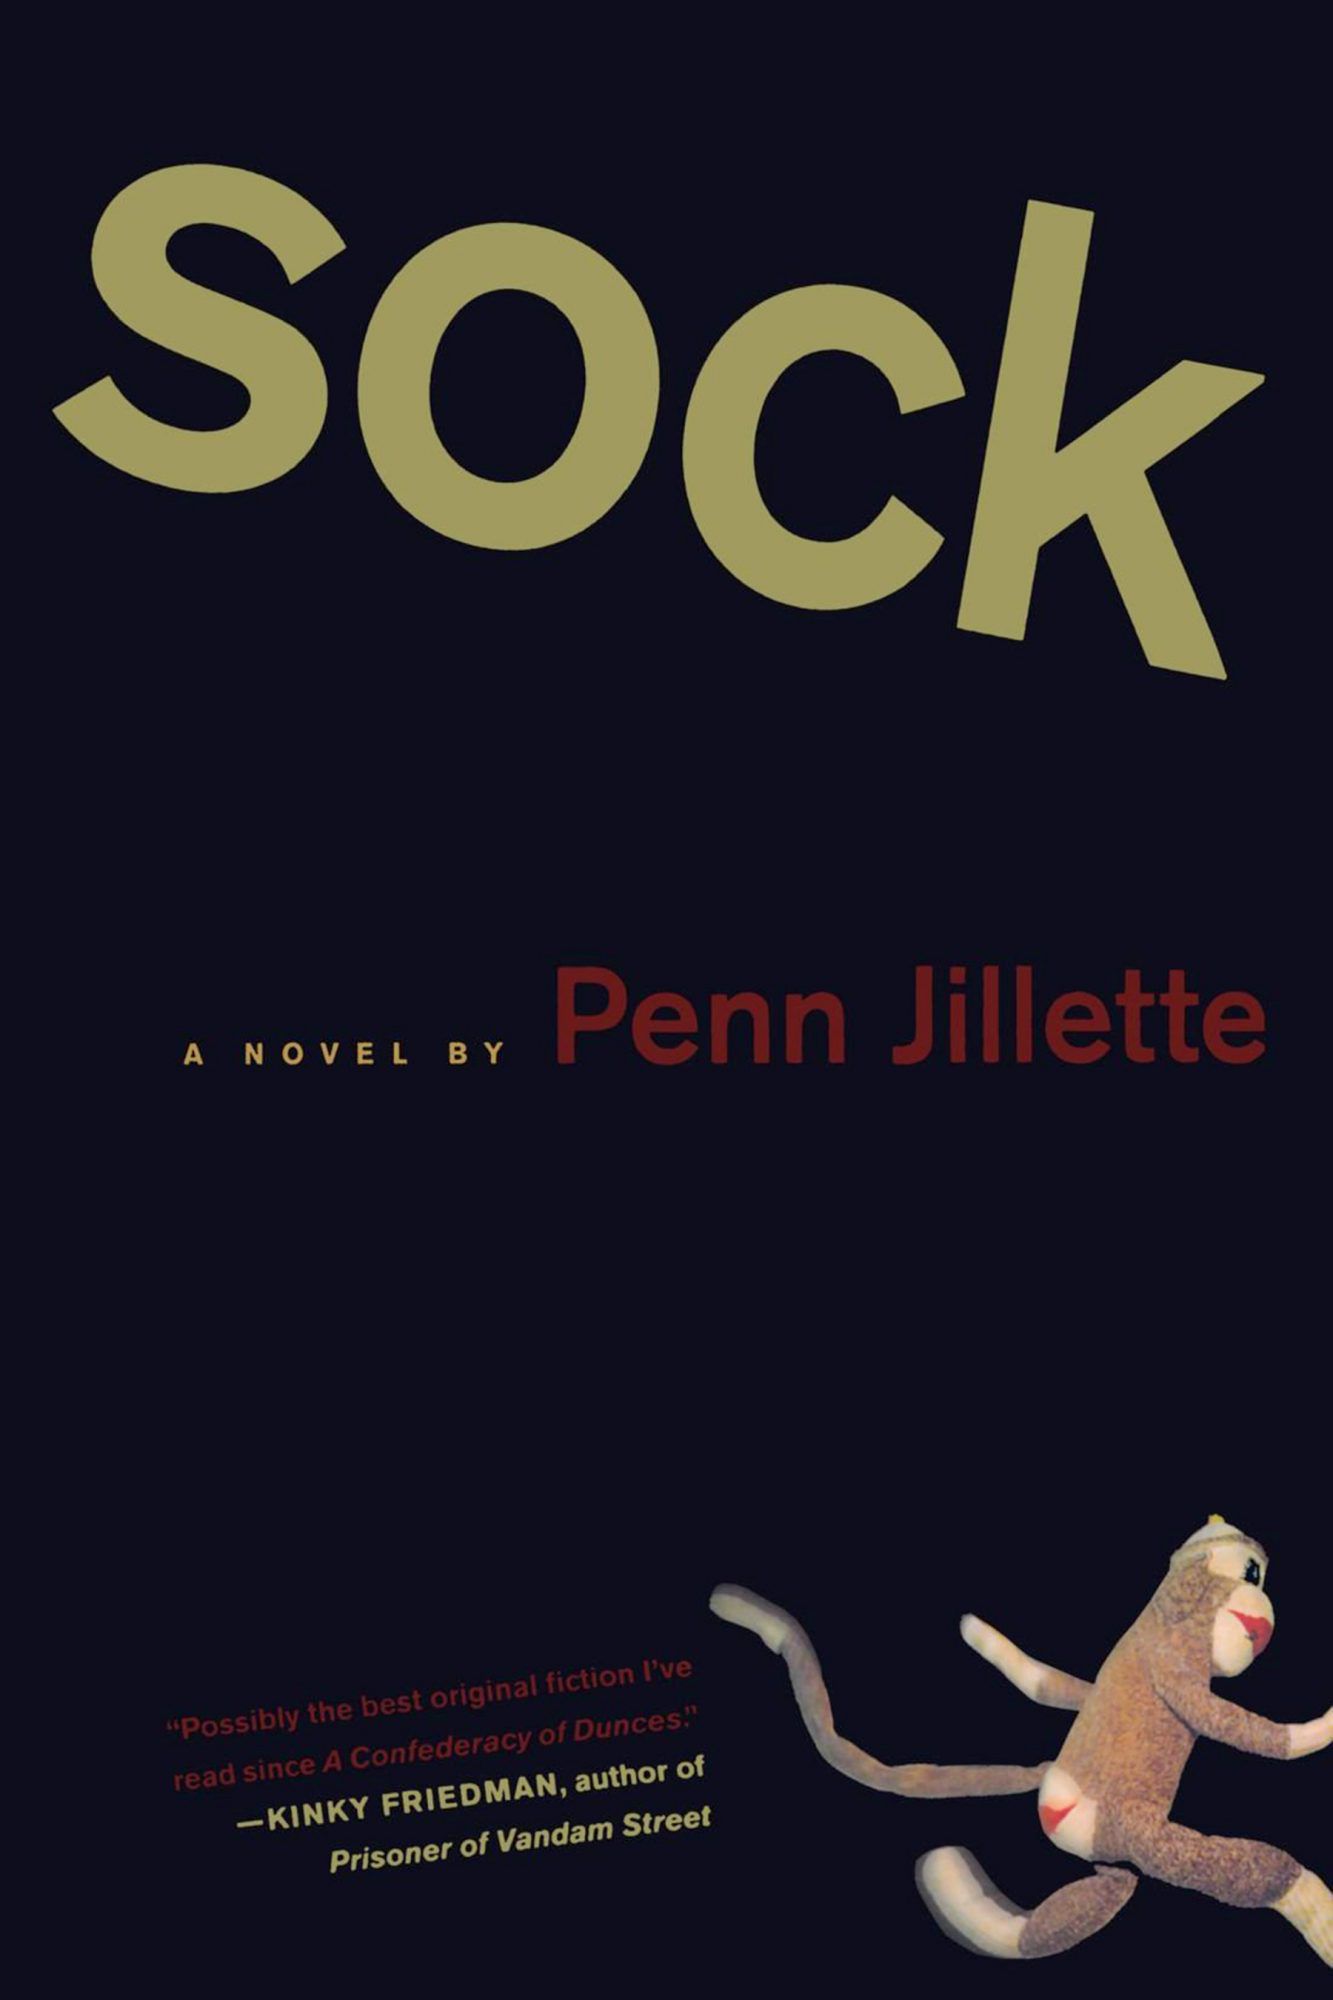 Penn Jillette, Sock